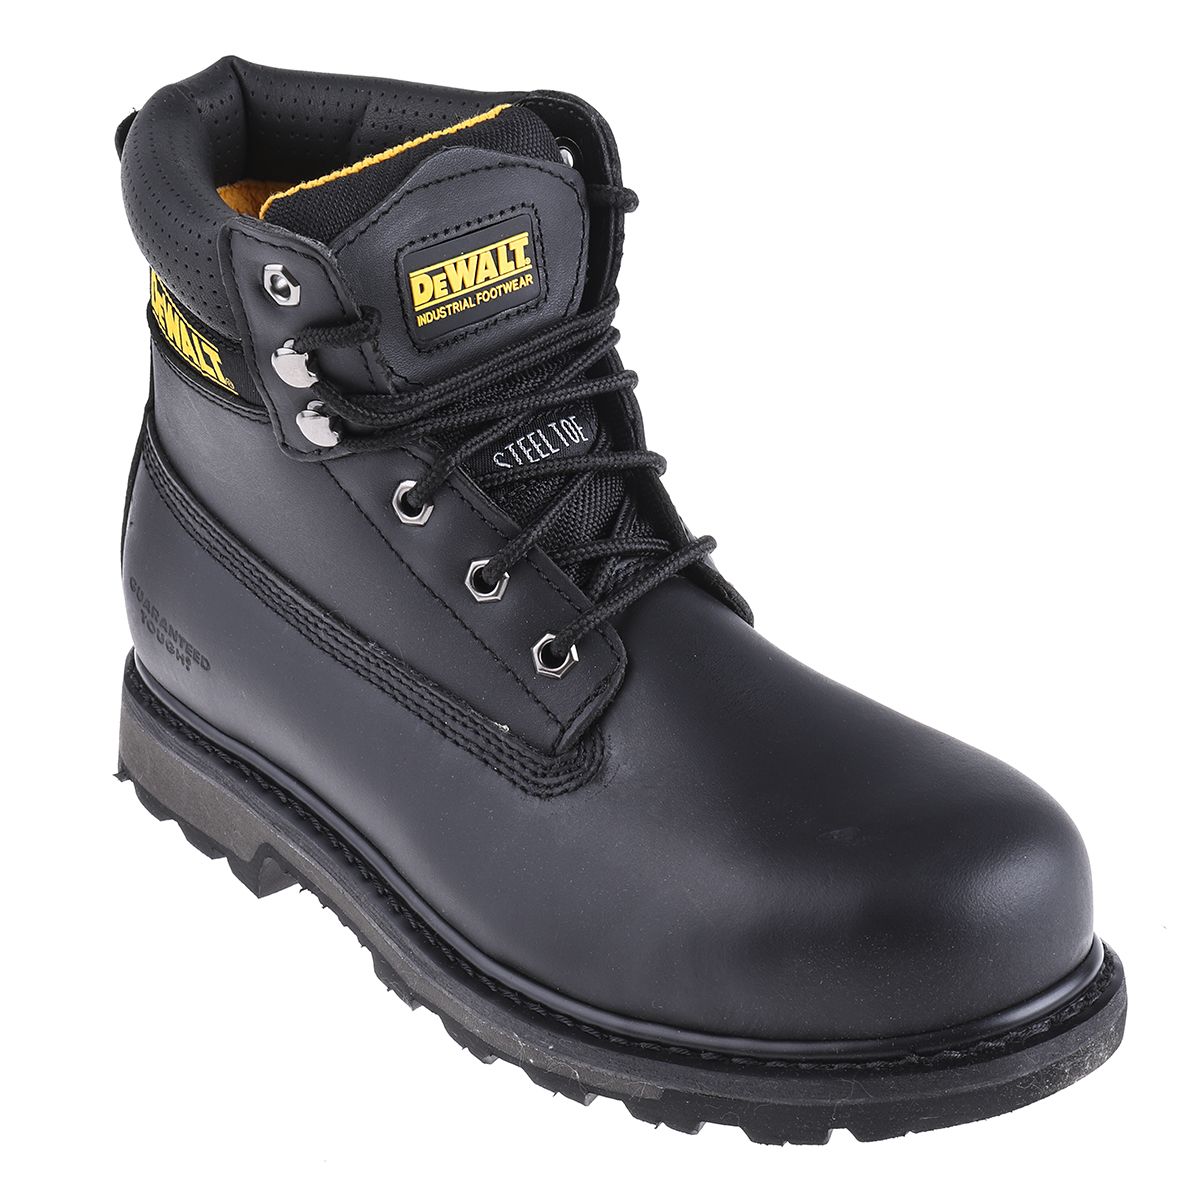 DeWALT Hancock Black Ankle Safety Boots, UK 11, EU 45